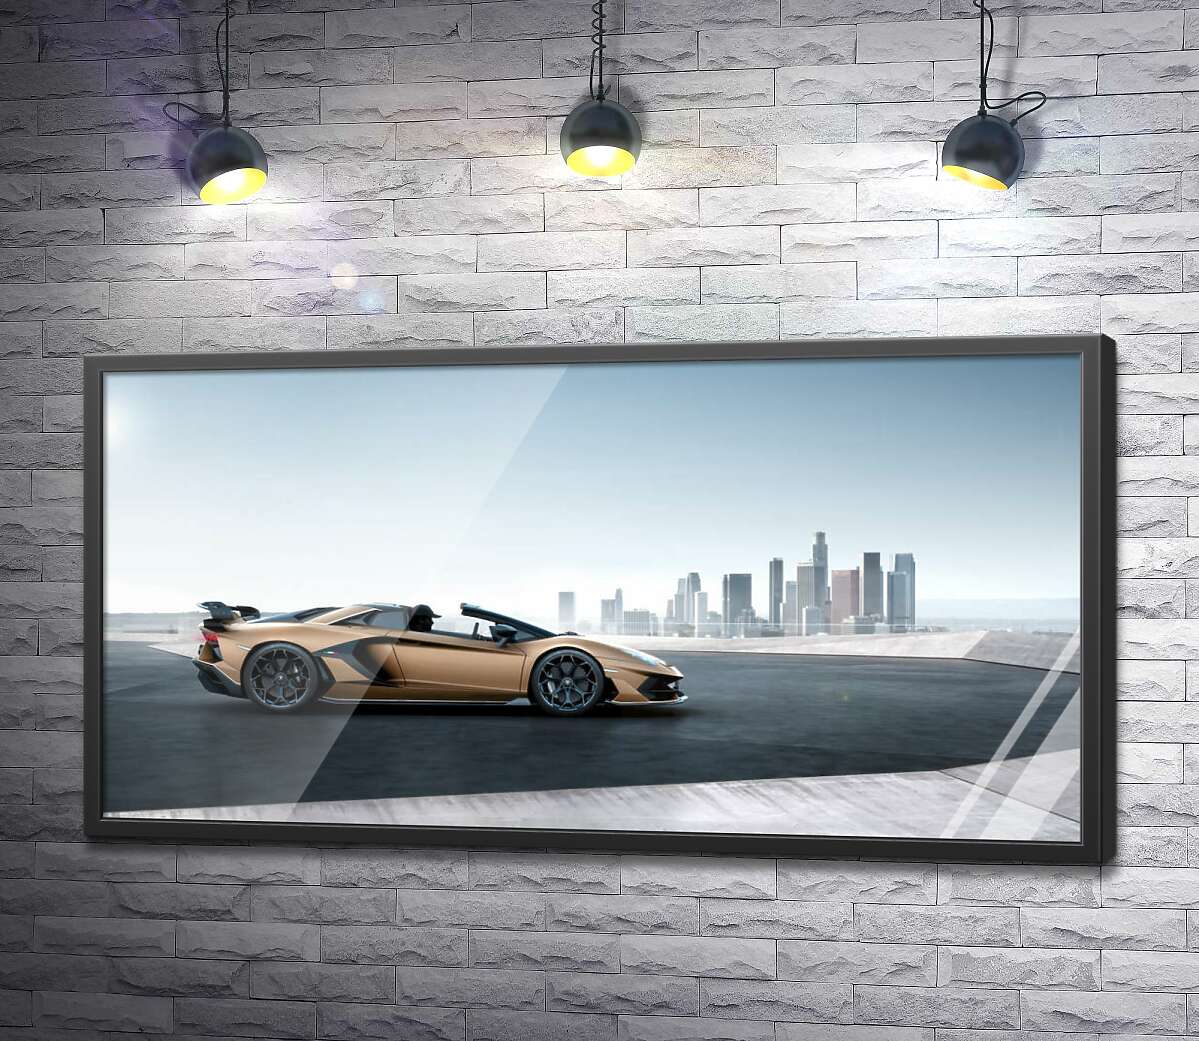 постер Золотой автомобиль Ламборгини (Lamborghini Aventador) с черными элементами